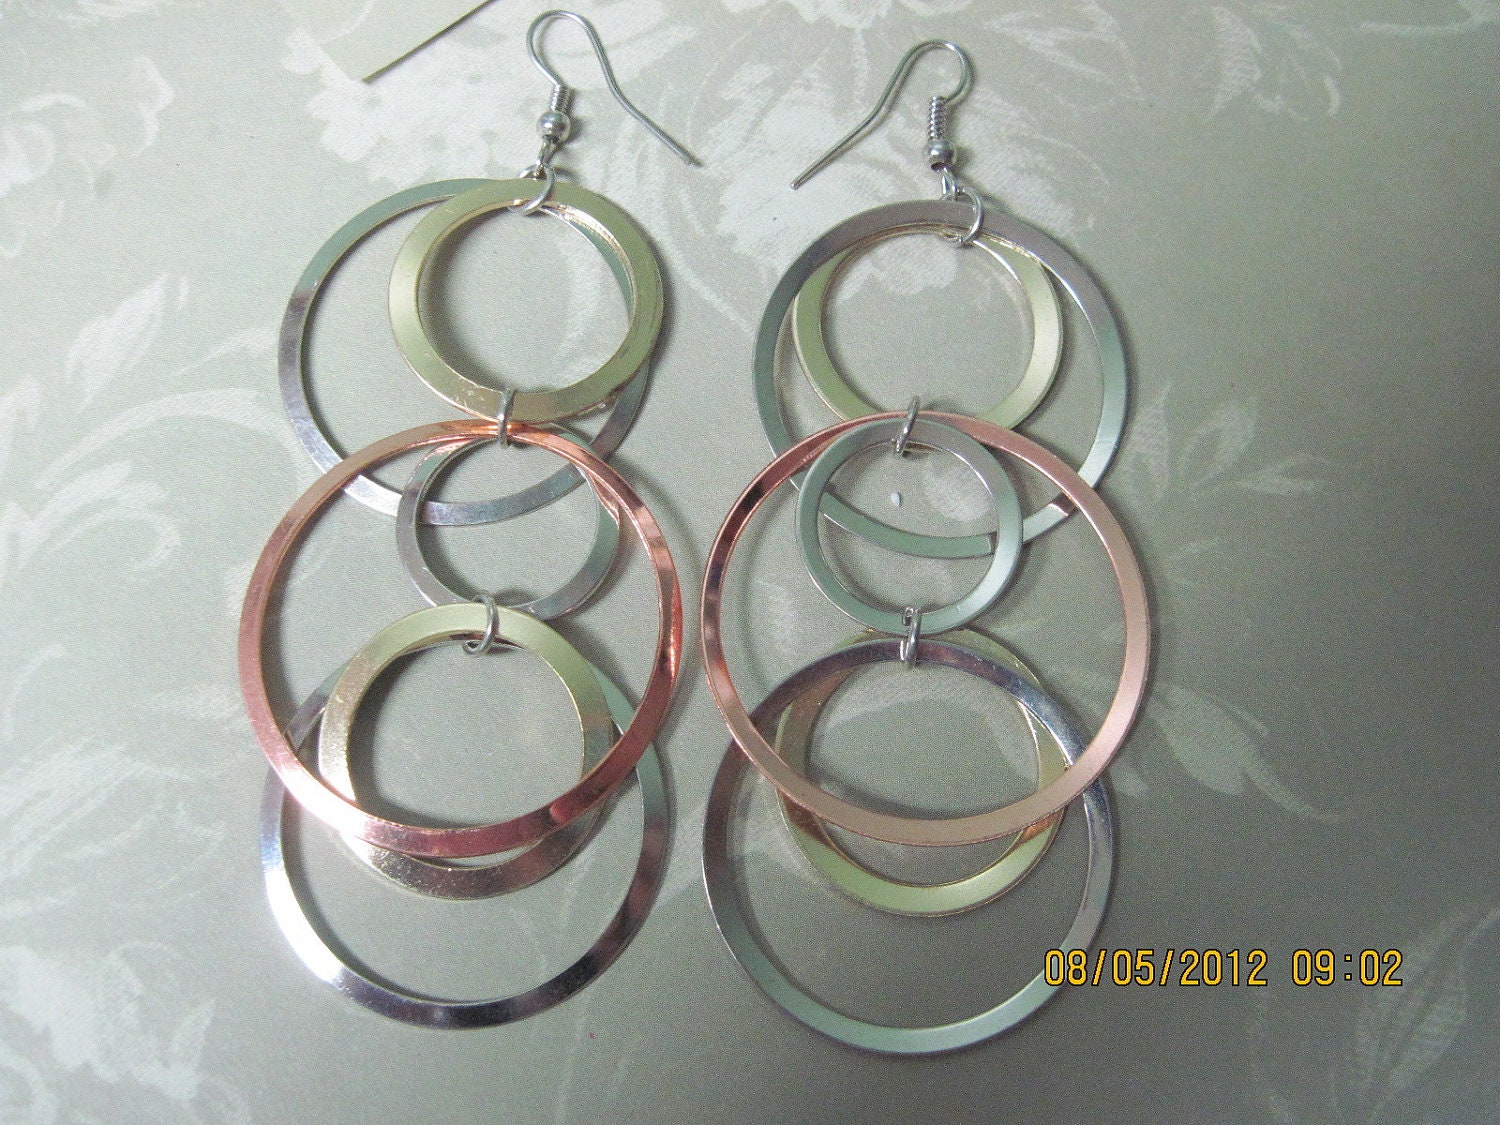 Hoop Earrings in silver, copper, and gold - Belladesigns2010